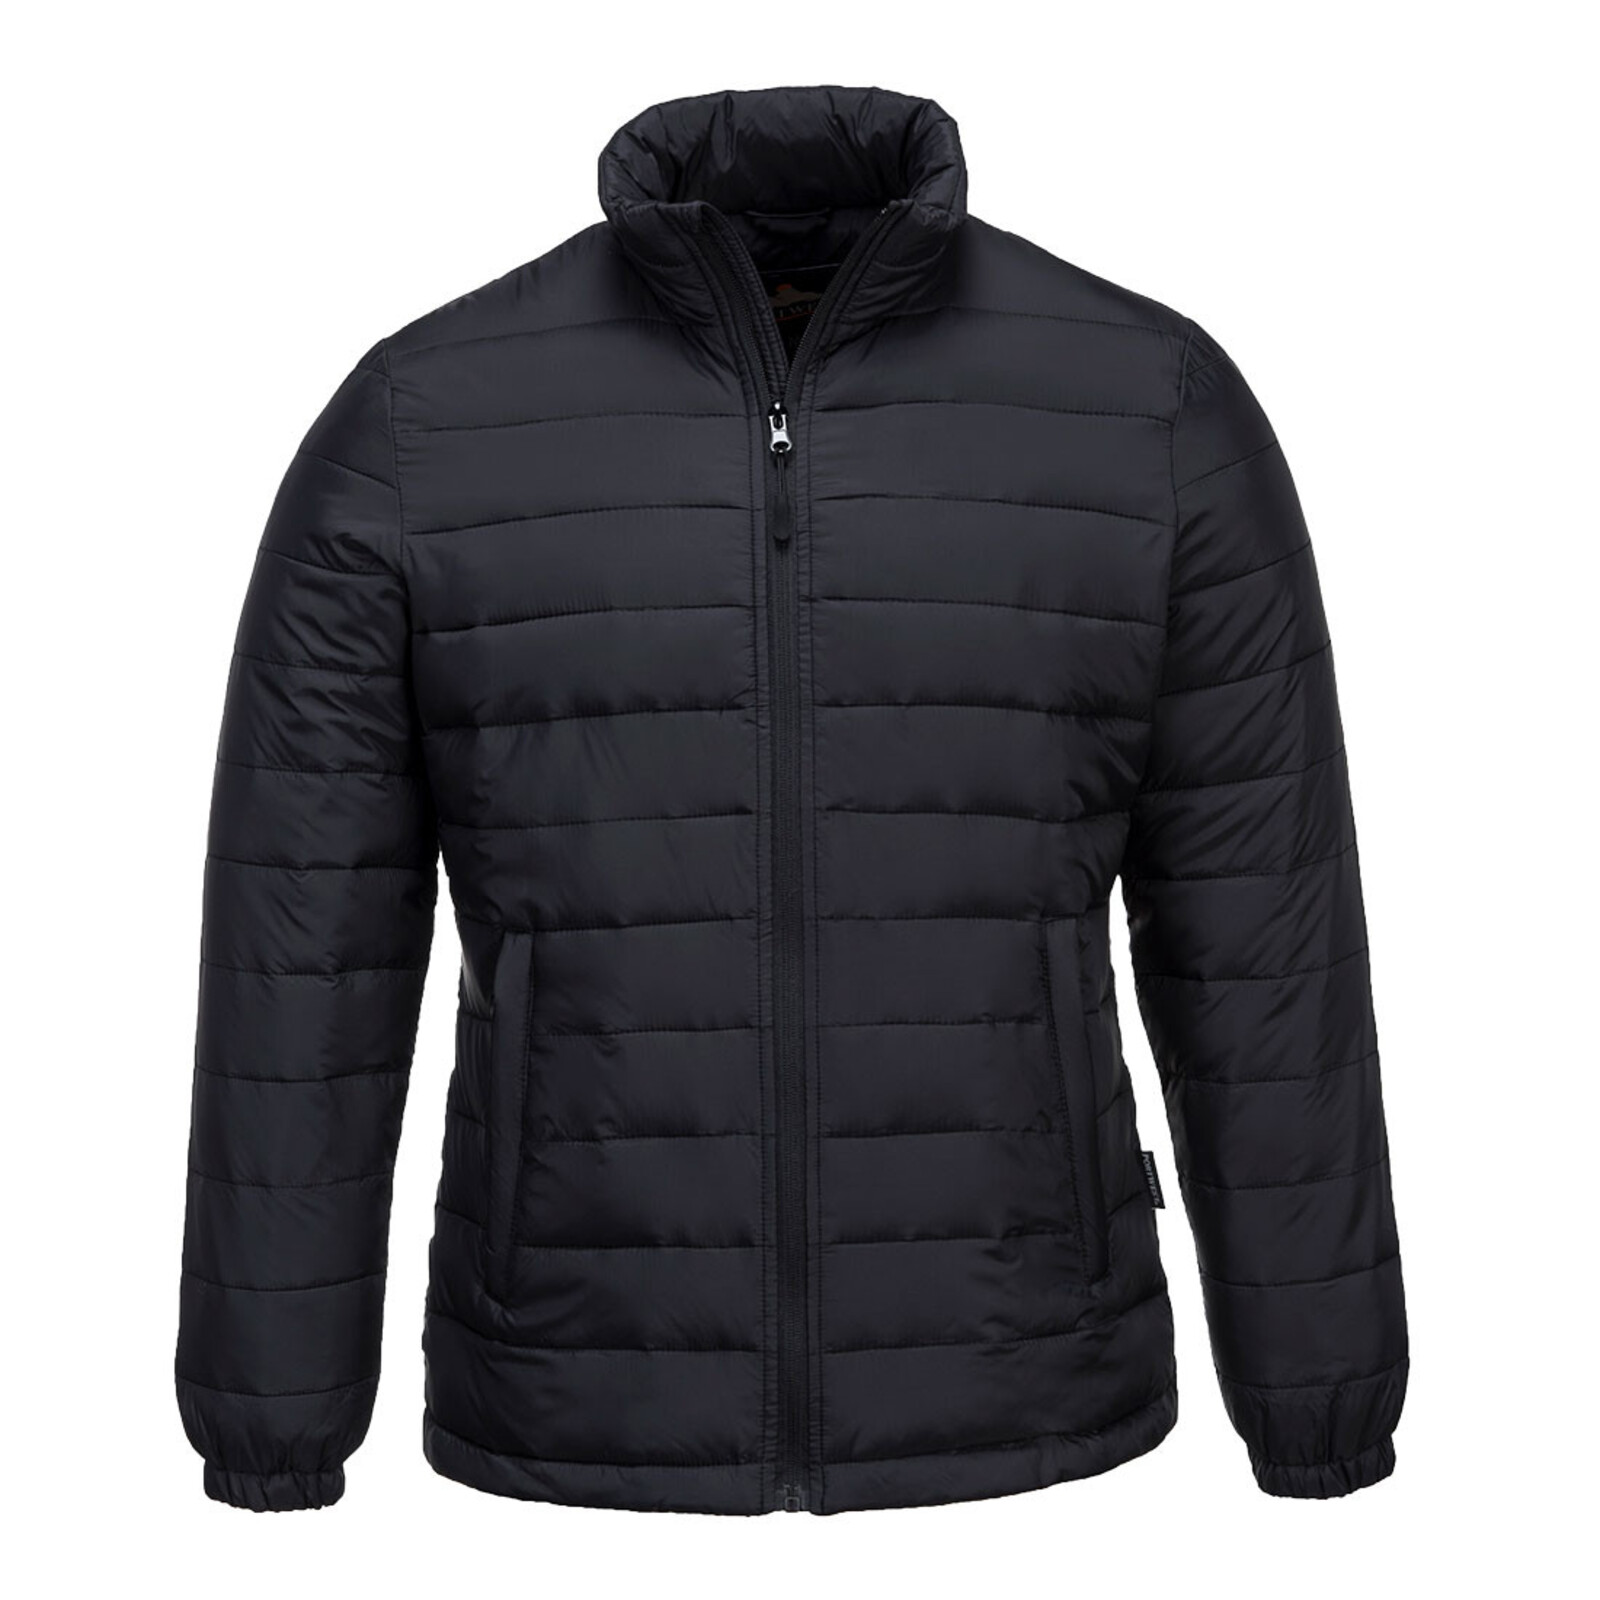 Dámska zateplená termo bunda Portwest Aspen Baffle S545 - veľkosť: L, farba: čierna